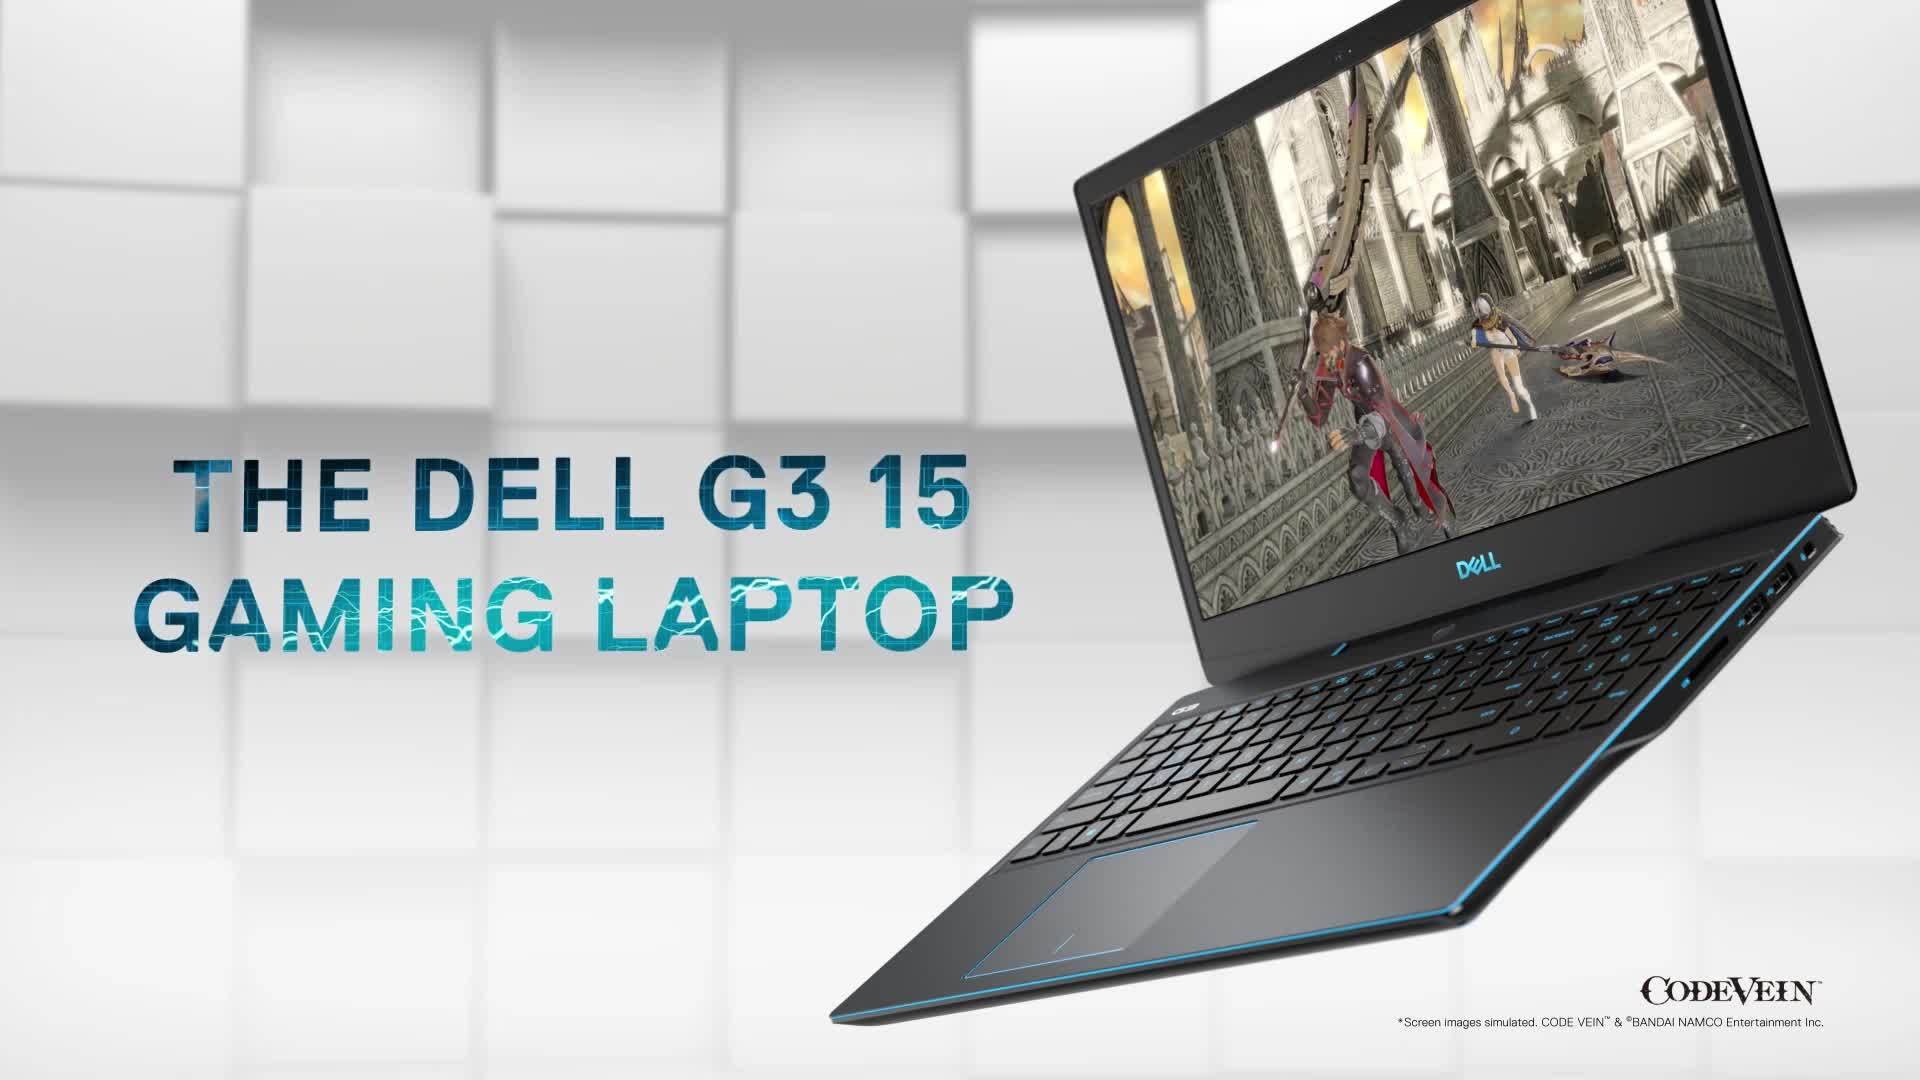 تعريفات ديل انسيبريون 3500 : Dell G3 15 6 Gaming Laptop Intel Core I5 8gb Memory Nvidia Geforce ...